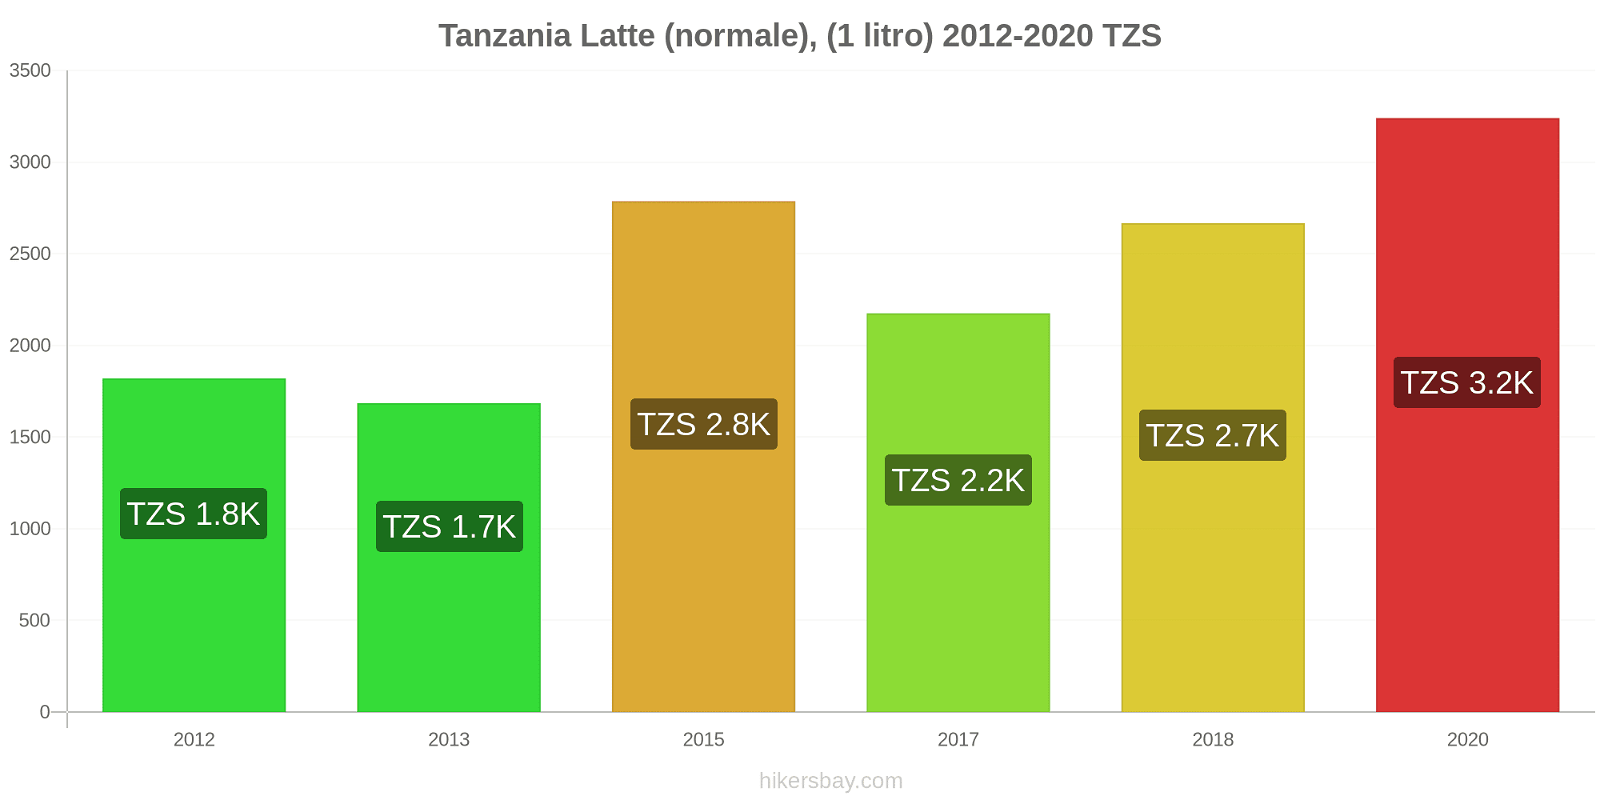 Tanzania variazioni di prezzo Latte (1 litro) hikersbay.com